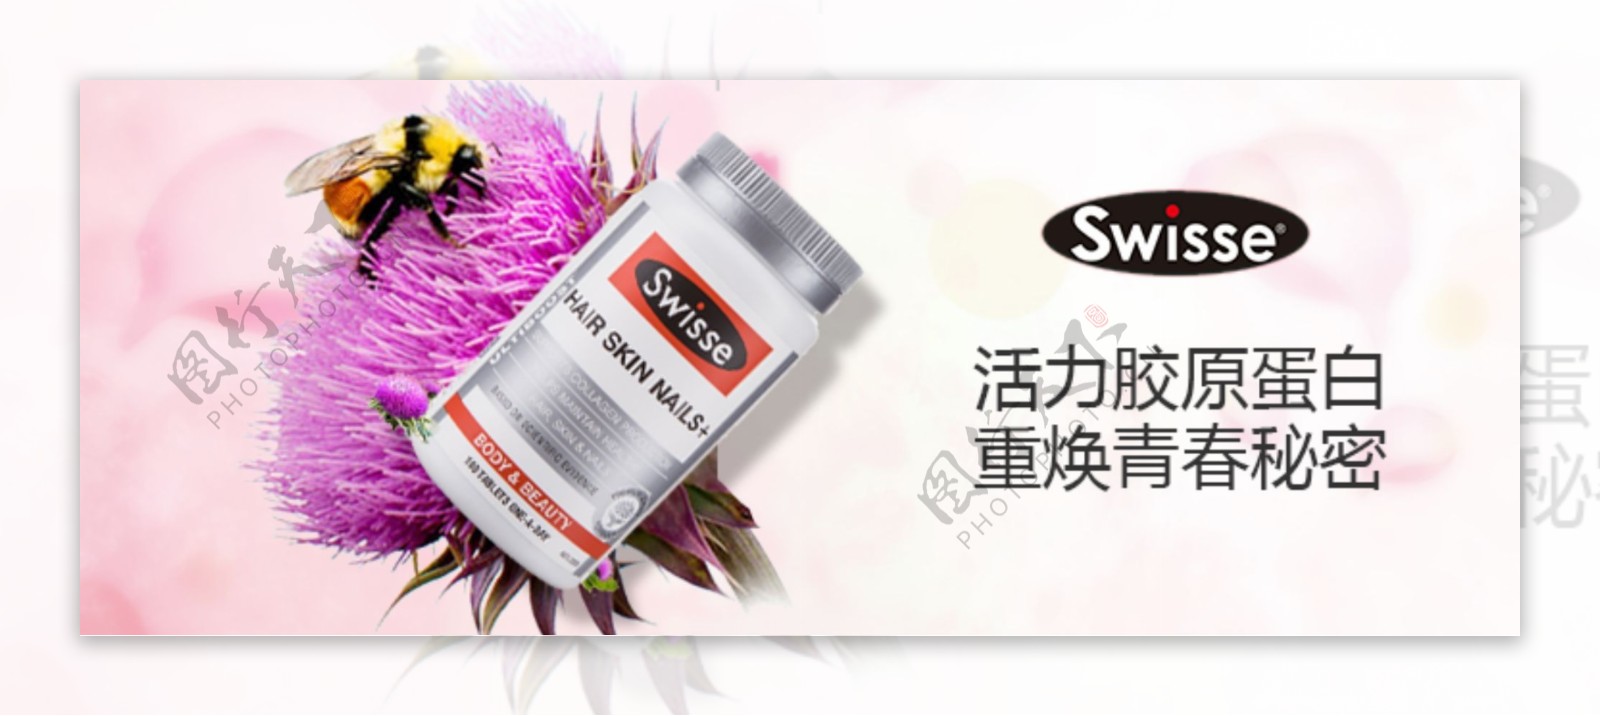 swise蛋白片